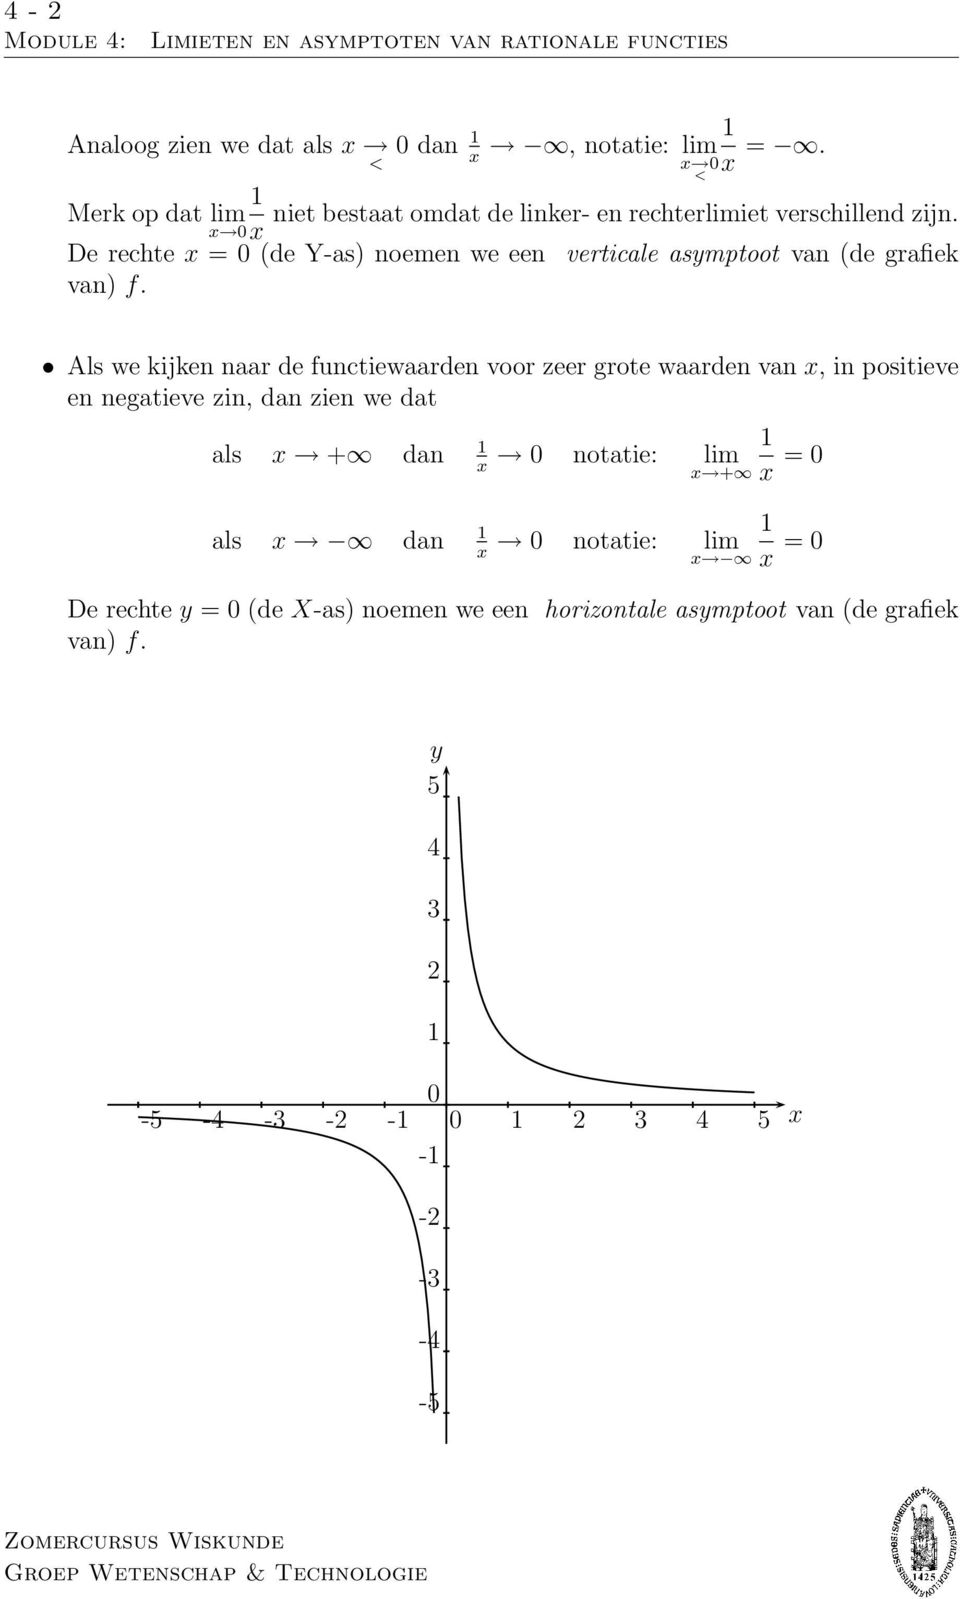 De rechte = 0 (de Y-as) noemen we een verticale asymptoot van (de grafiek van) f.